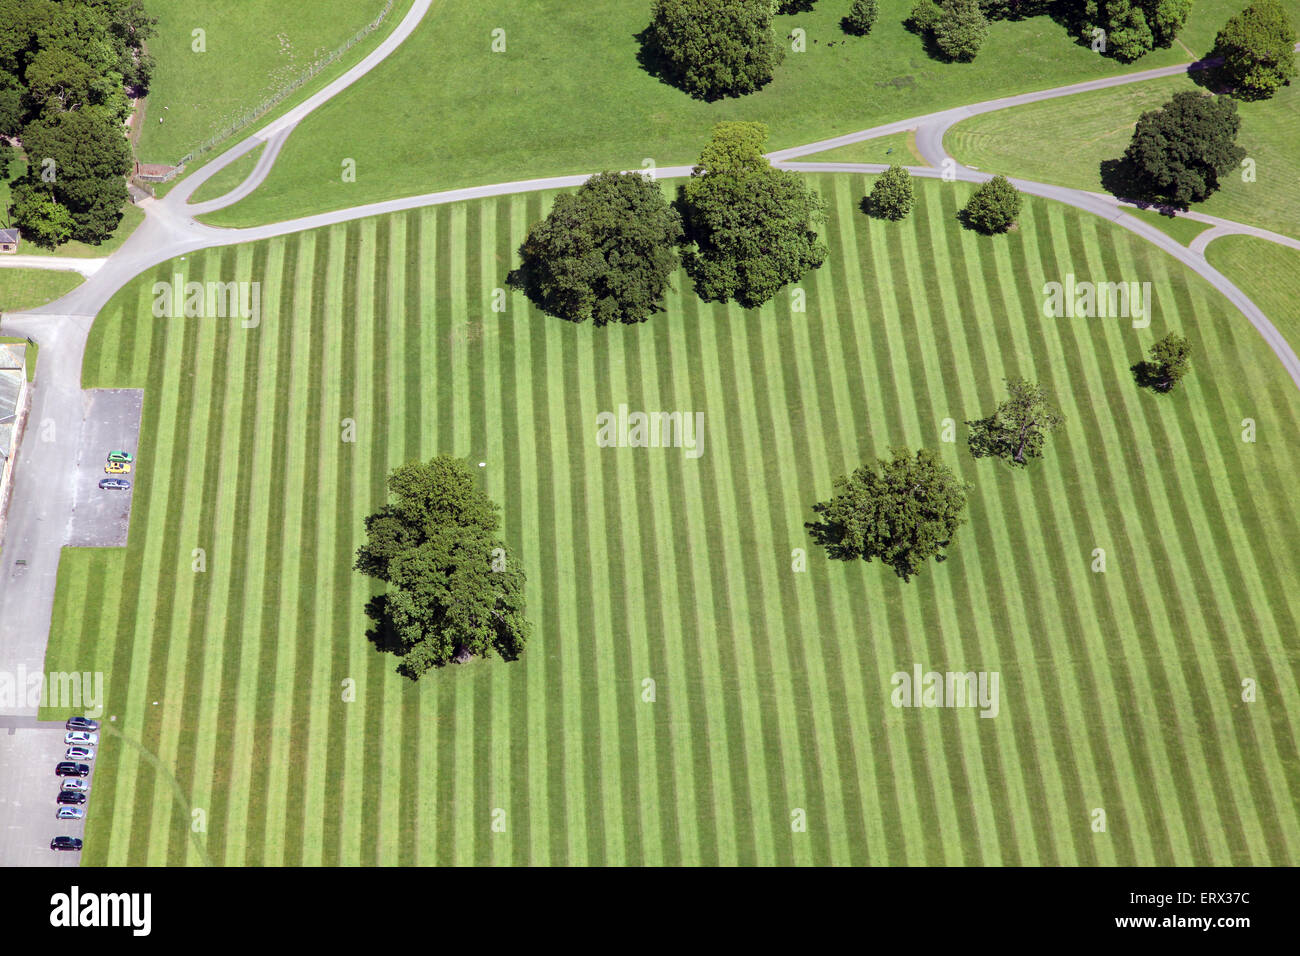 Luftaufnahme von einem gestreiften Rasen, stripey Rasen Muster mit Bäumen, UK Stockfoto